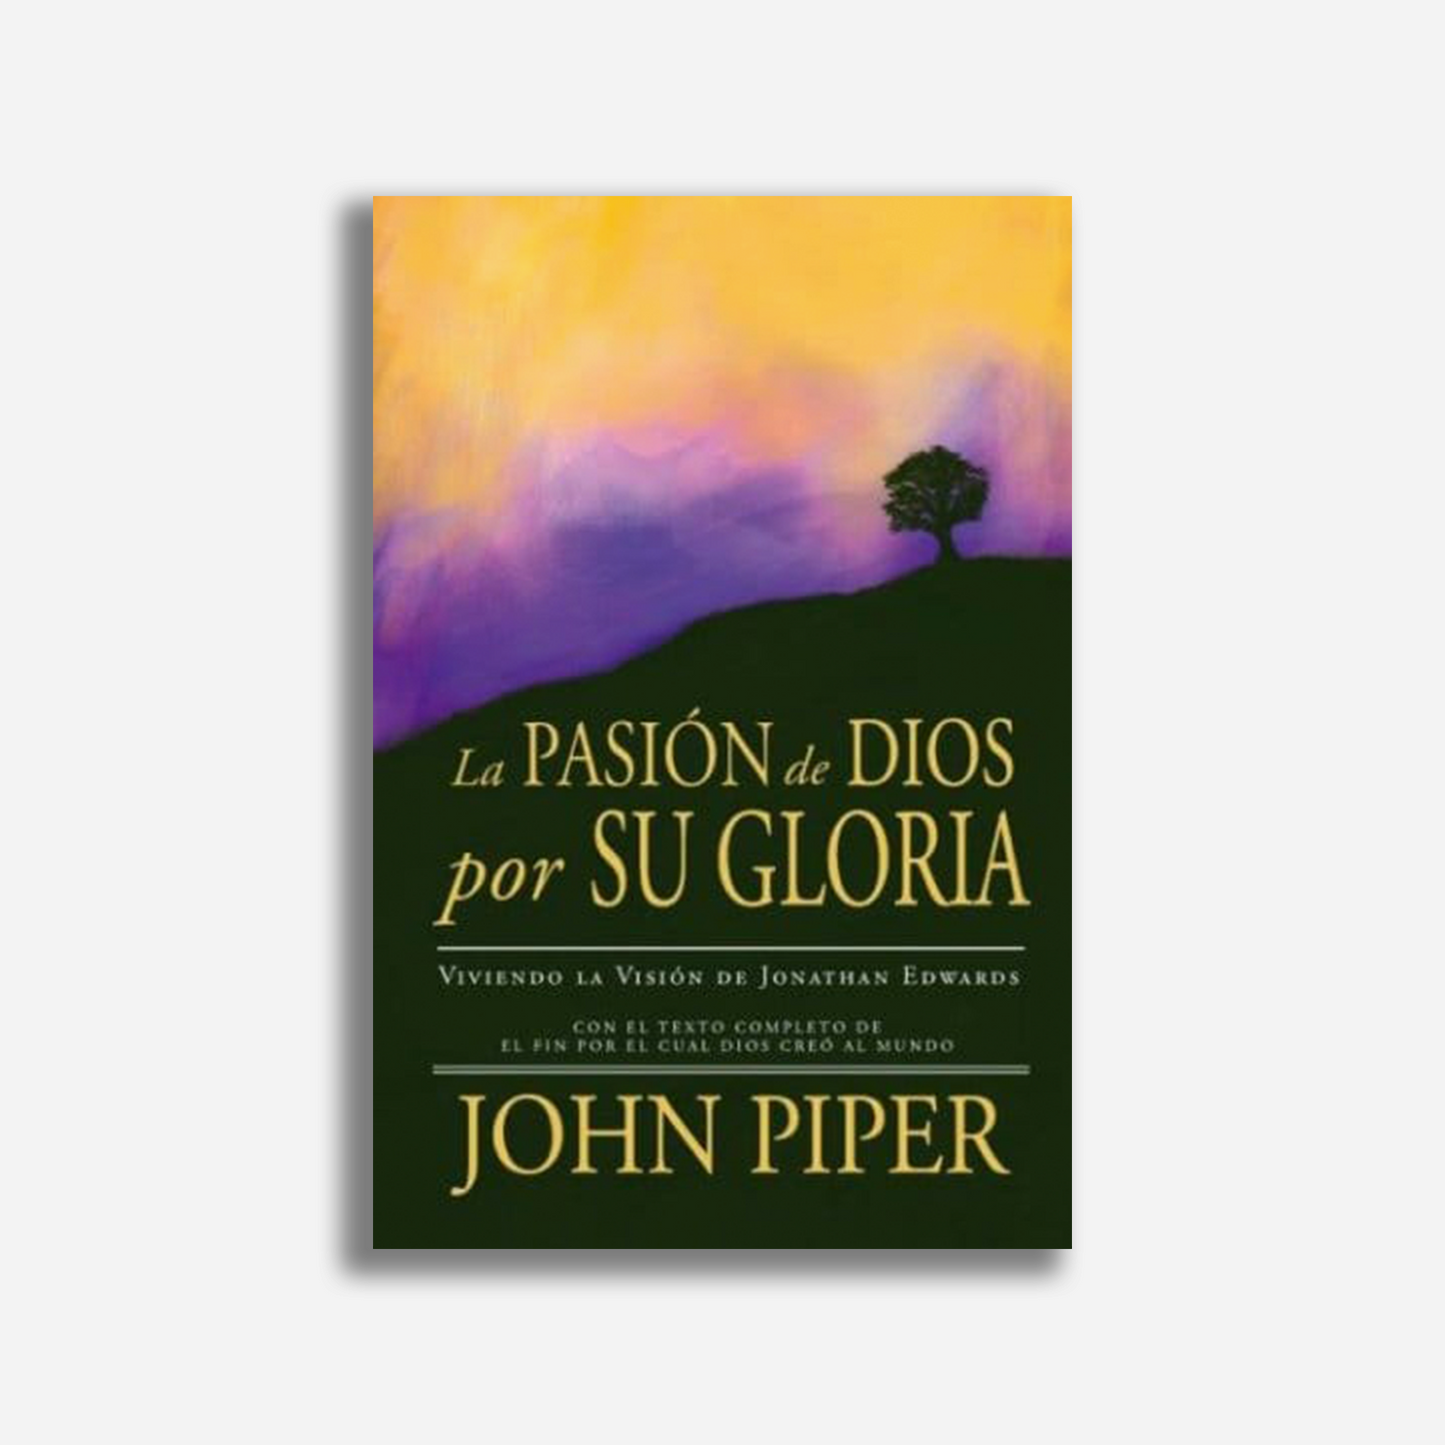 La pasión de Dios por su gloria